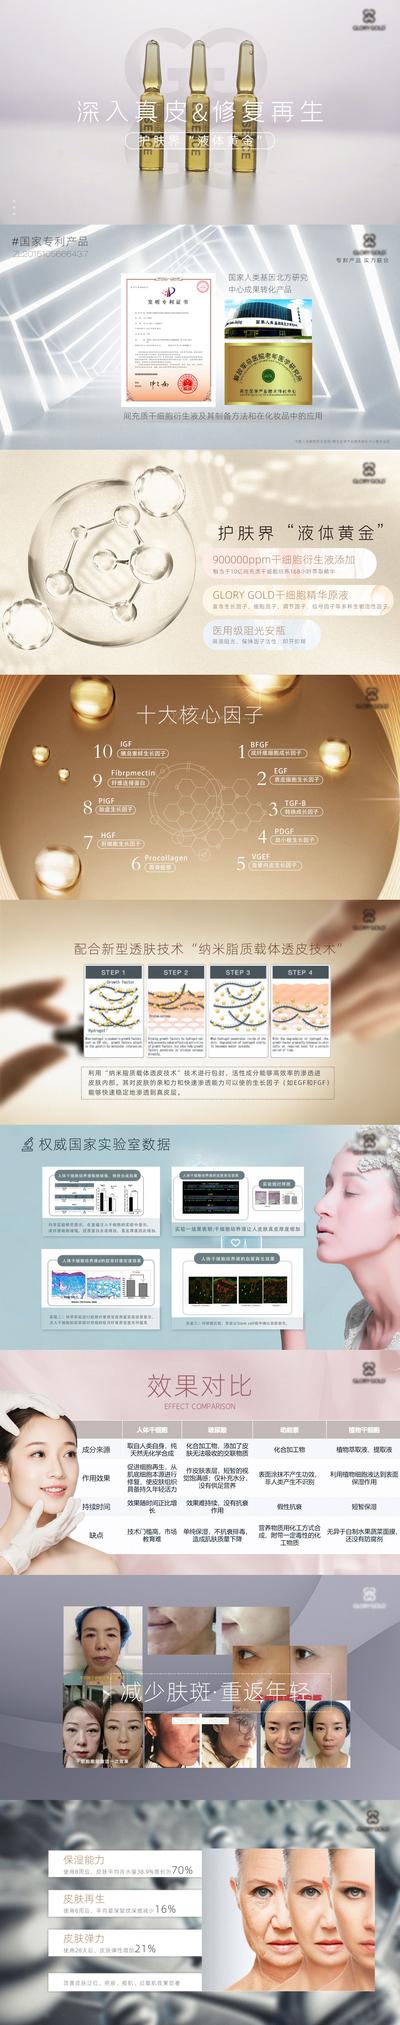 【南门网】PPT 医疗 抗衰 护肤 产品 宣讲 美容 